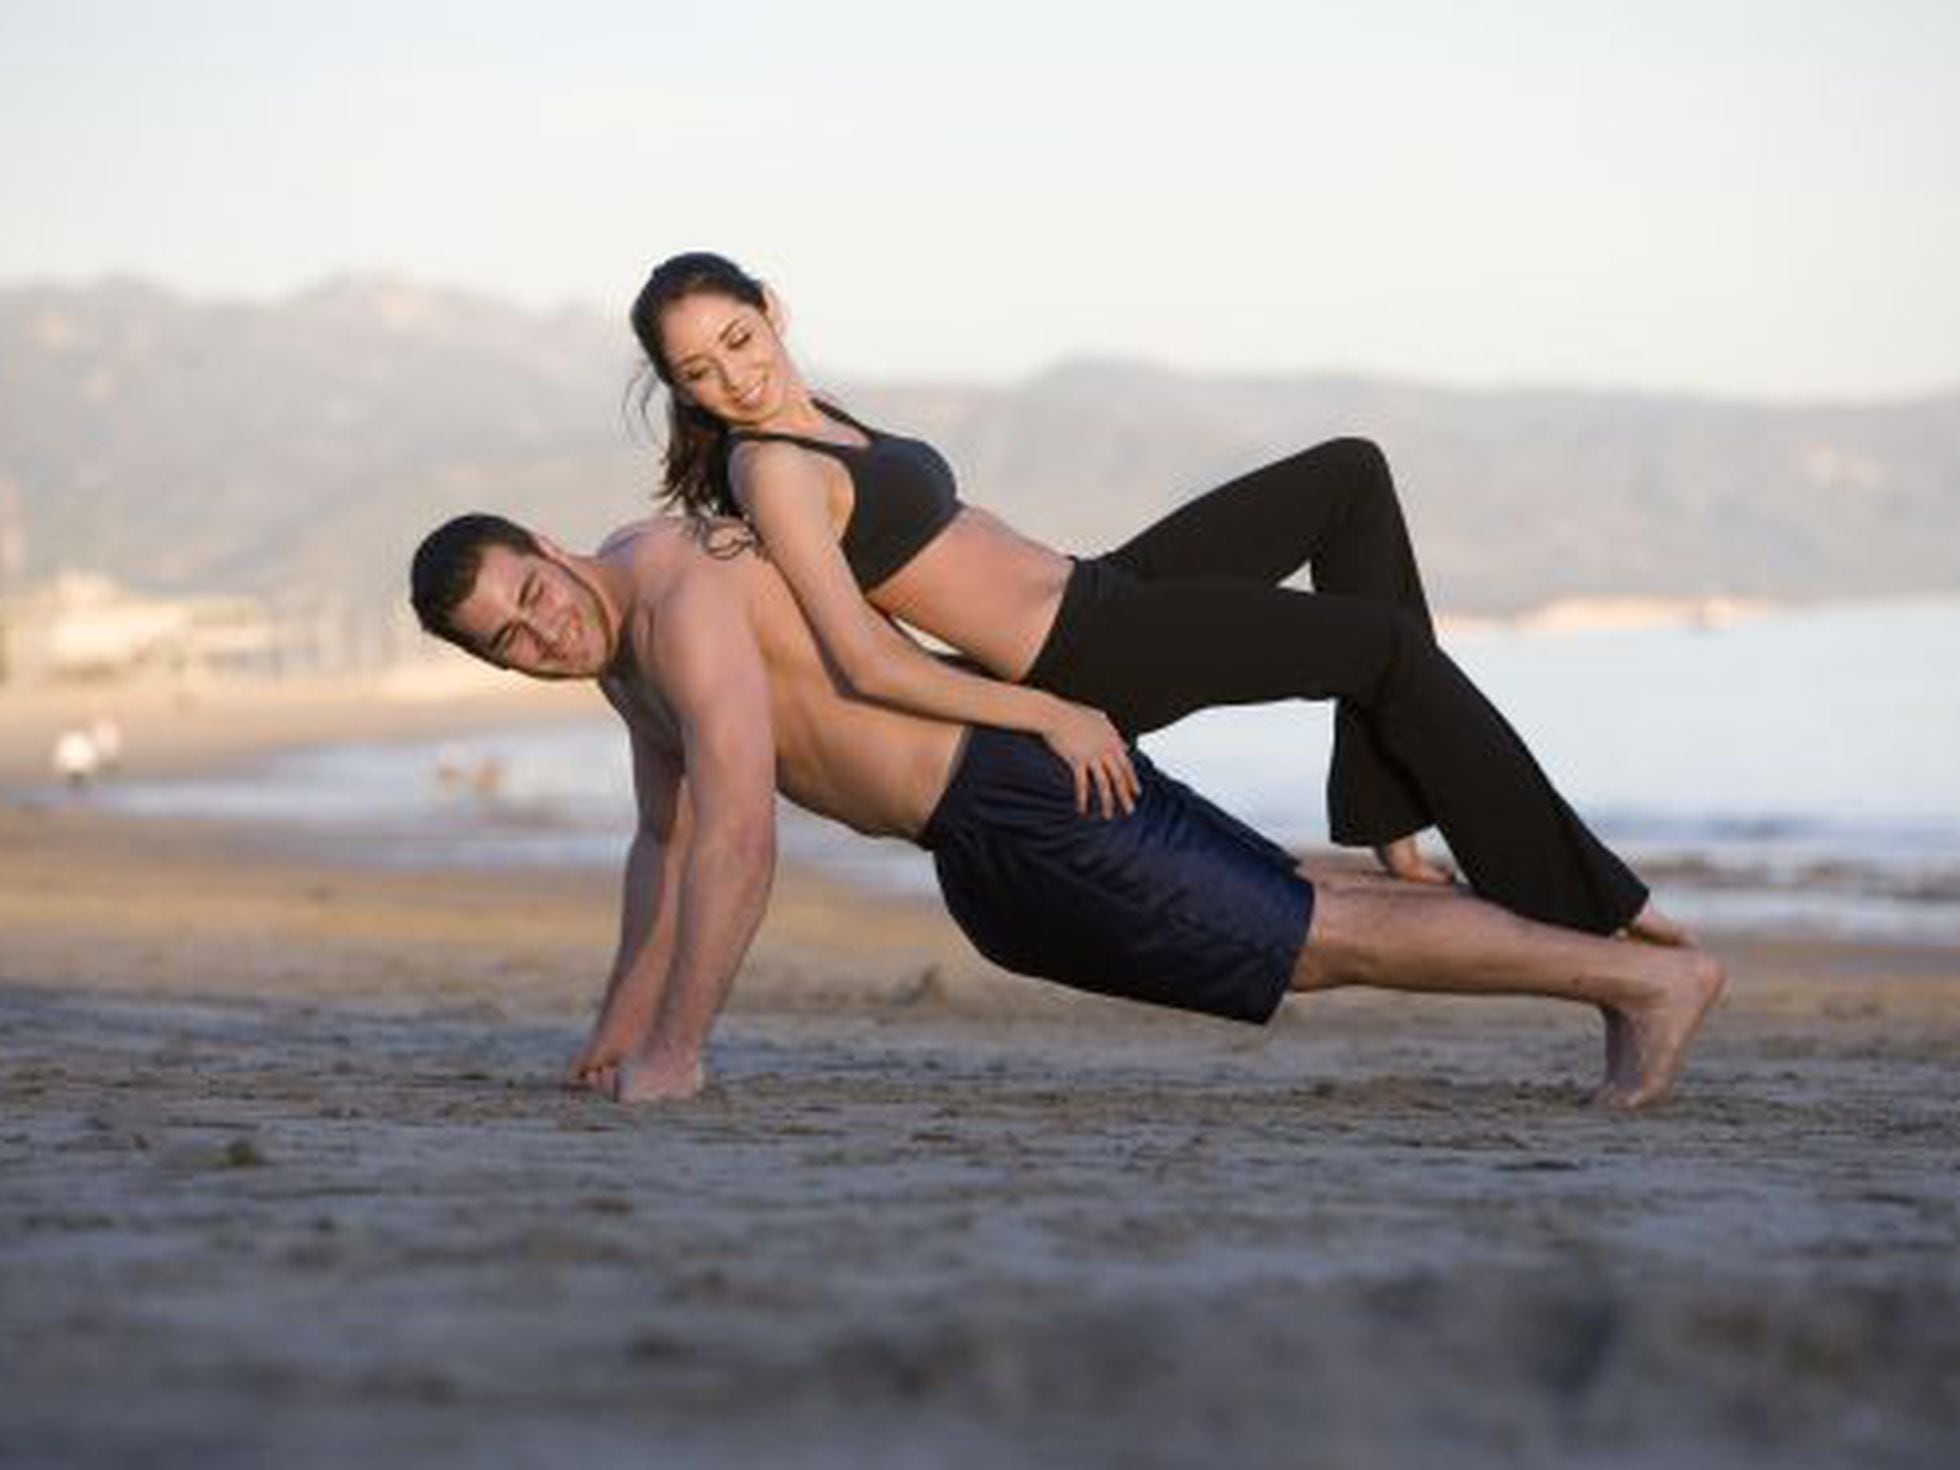 Como o yoga pode melhorar a vida sexual feminina? Especialista